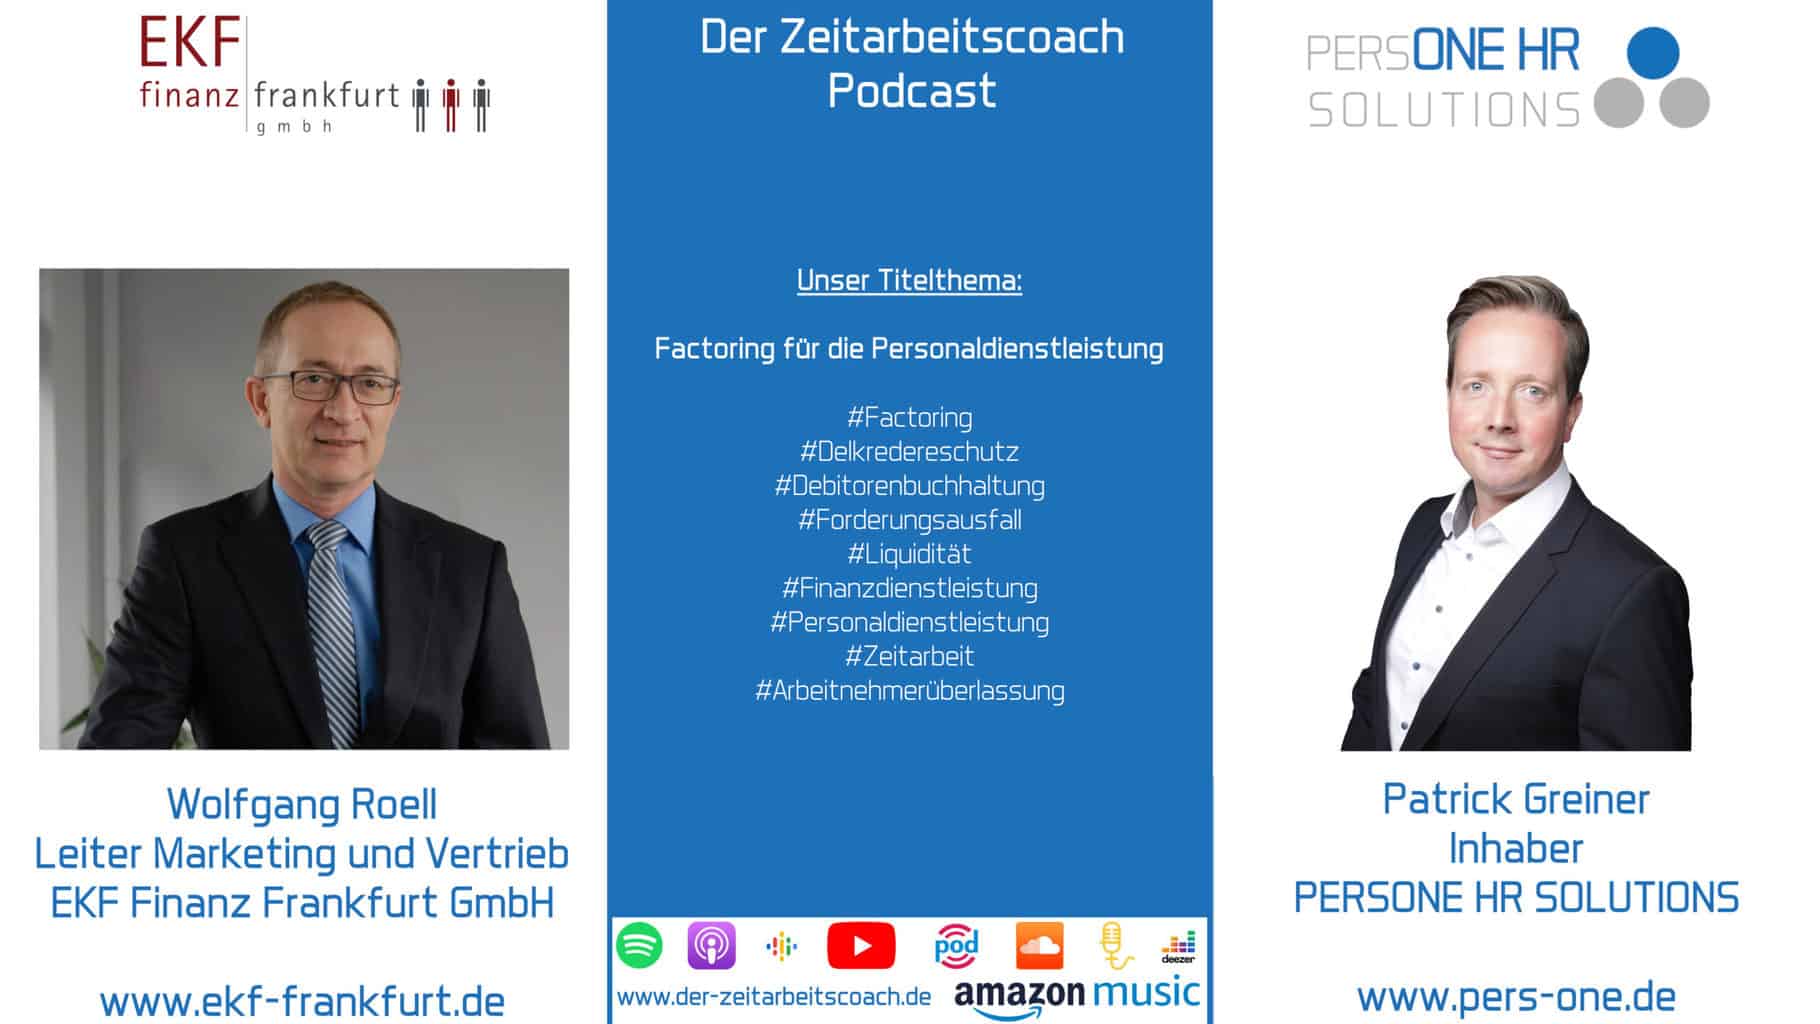 Factoring für die Personaldienstleistung | Wolfgang Roell im Zeitarbeitscoach Podcast mit Patrick Greiner